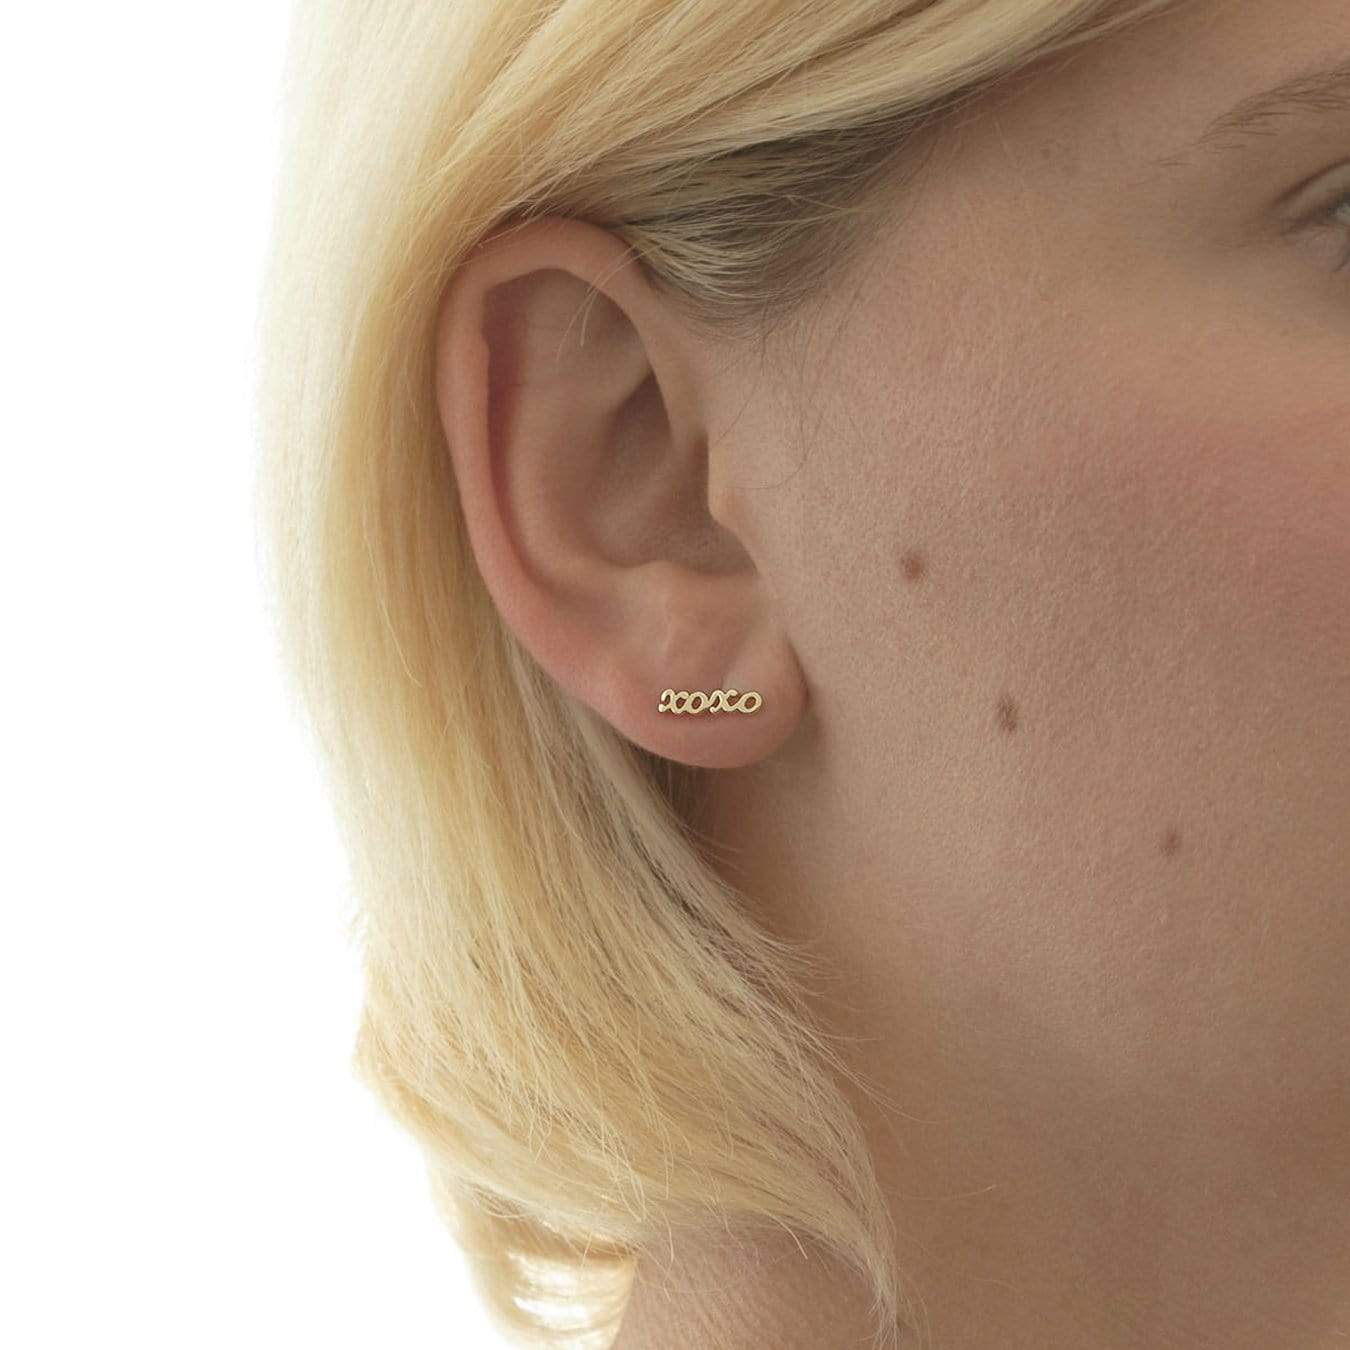 XOXO Script Stud Earrings Earrings Kris Nations 